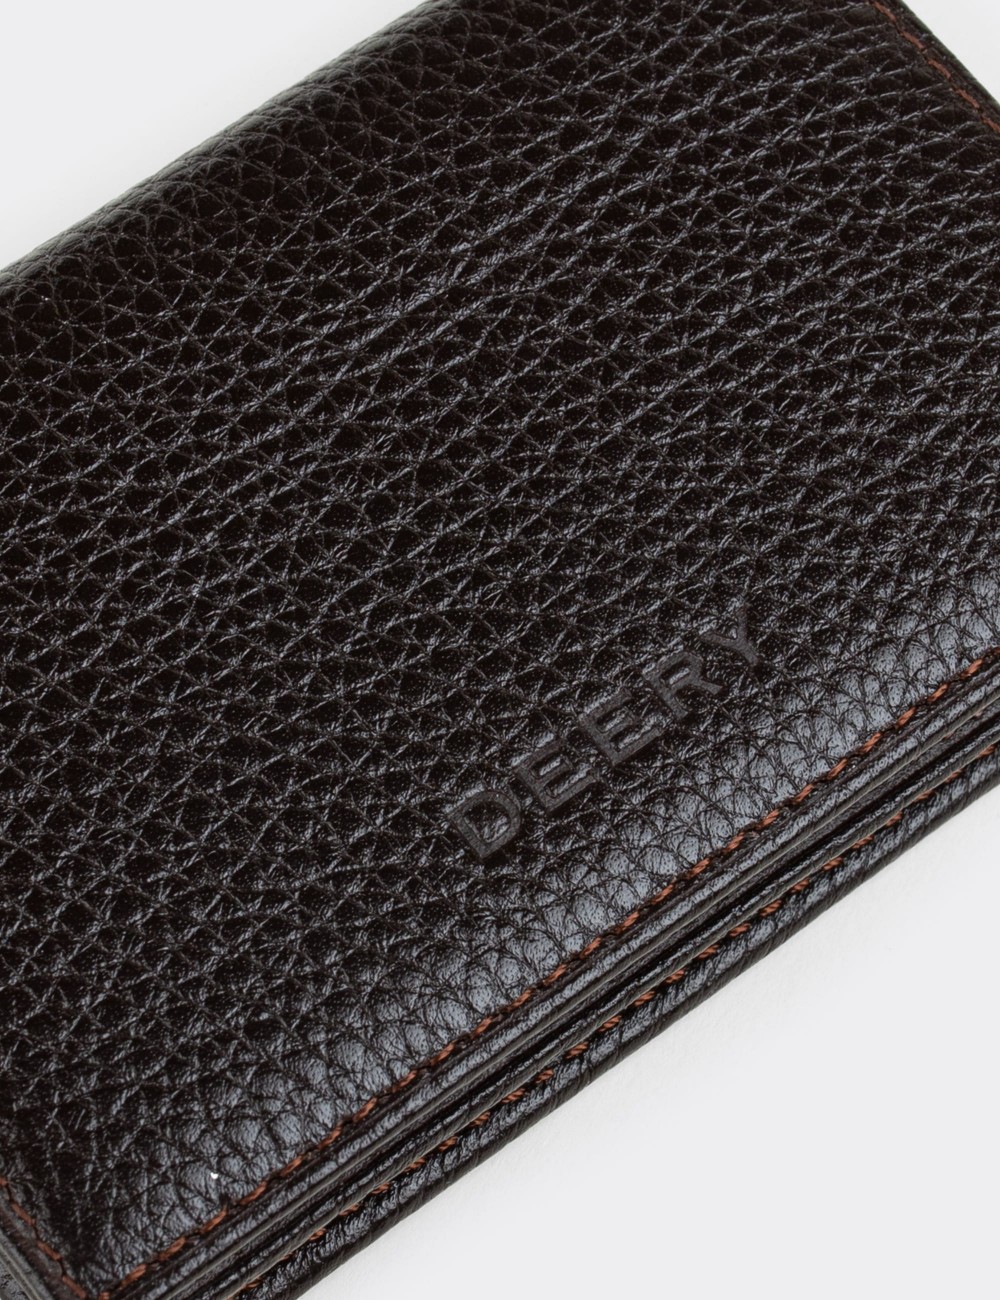  Leather Brown Men's Wallet - 00585MKHVZ01